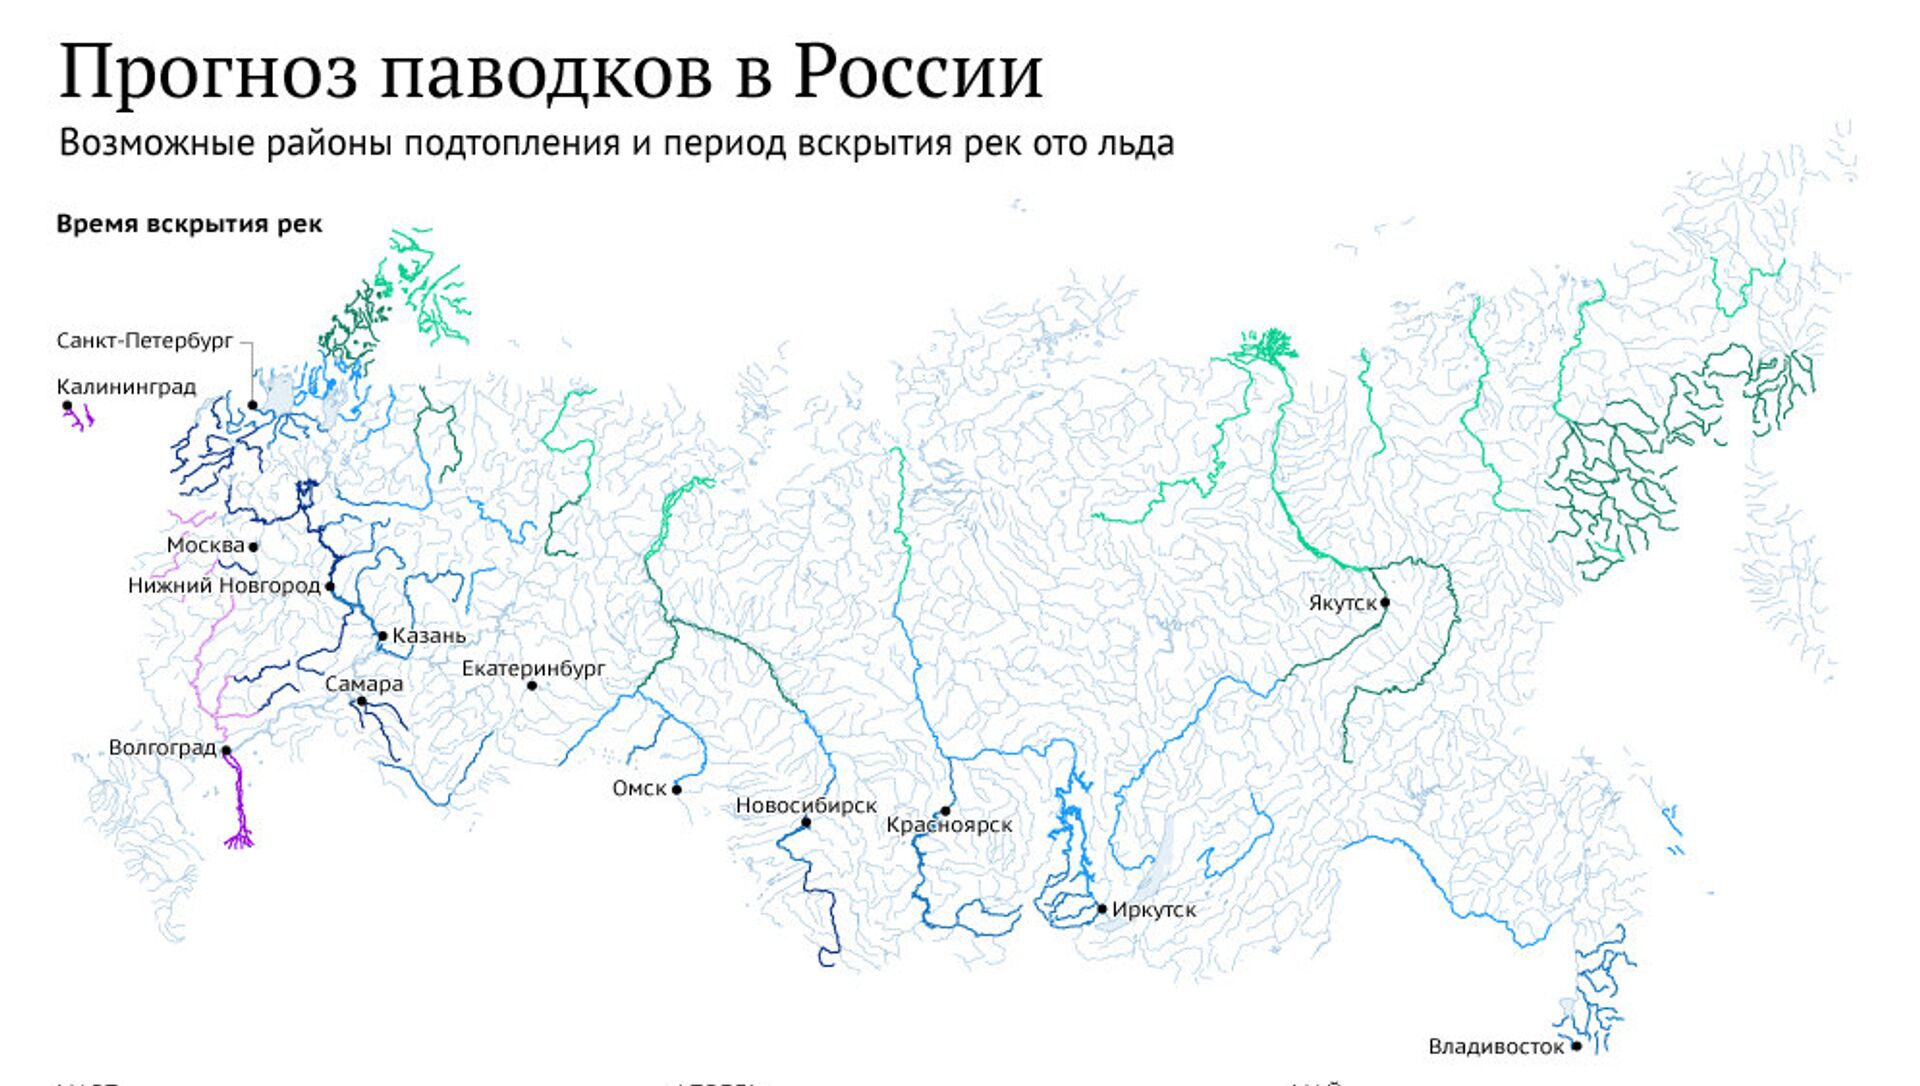 Карта подтопления оренбургской области. Карта паводков в России. Карта 8 класс наводнения России. Карта наводнений на реках России. Районы России подверженные наводнениям на контурной карте.